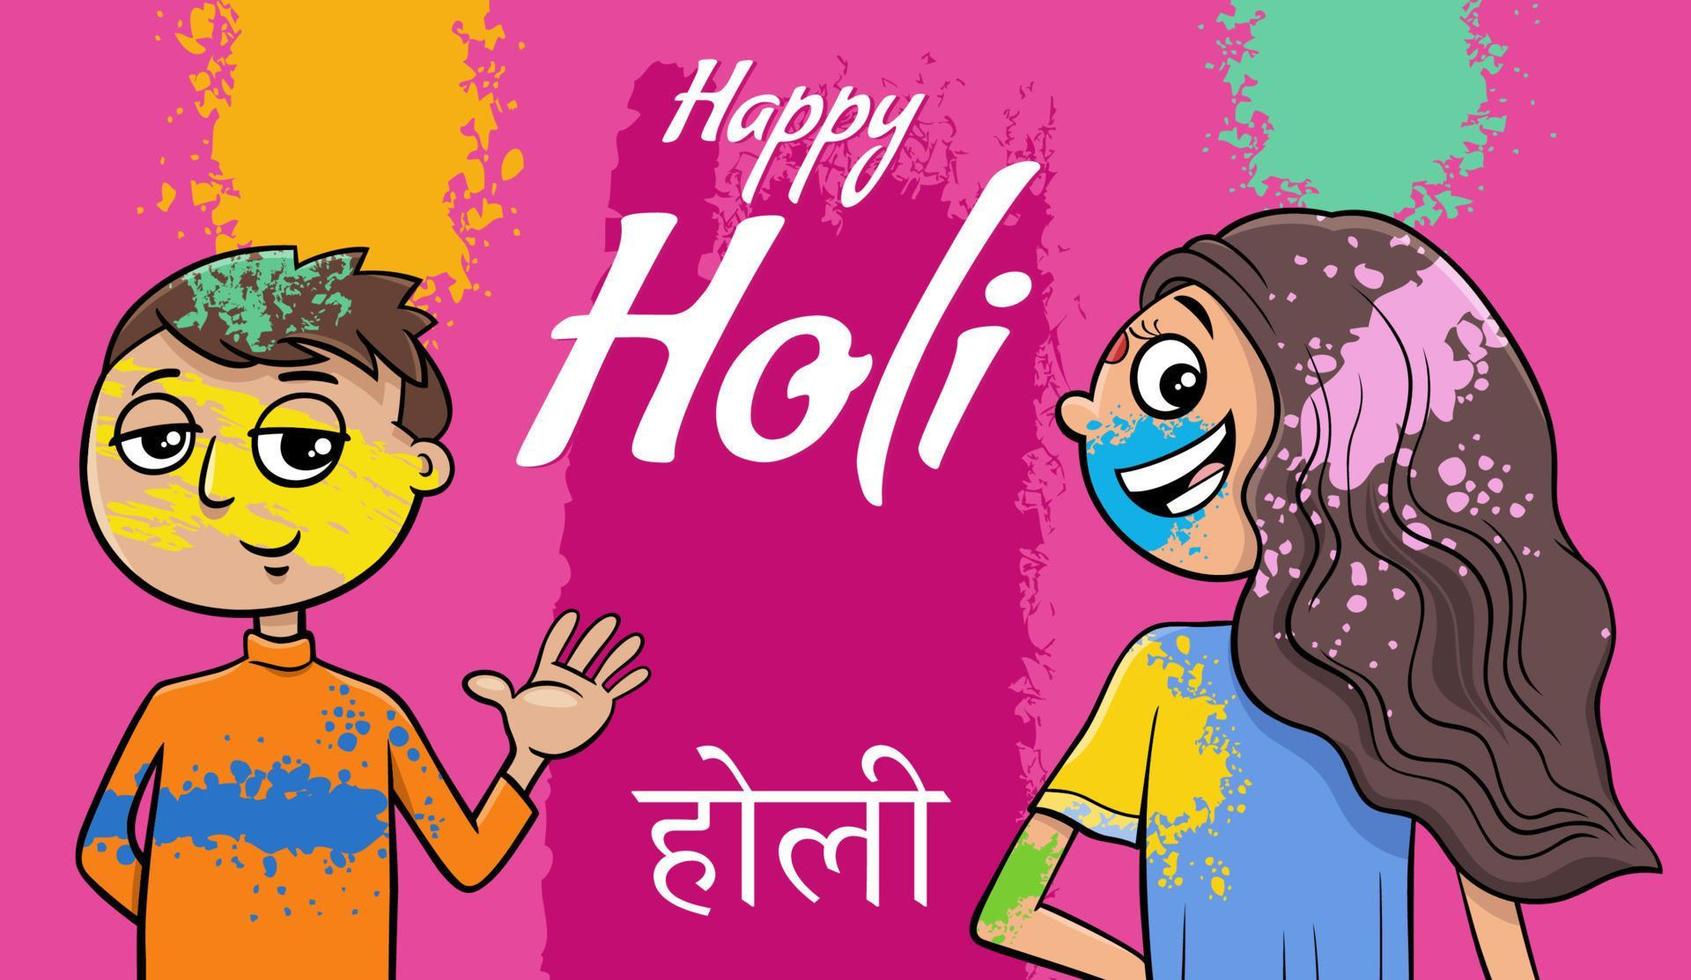 diseño del festival holi hindú con personajes cómicos vector